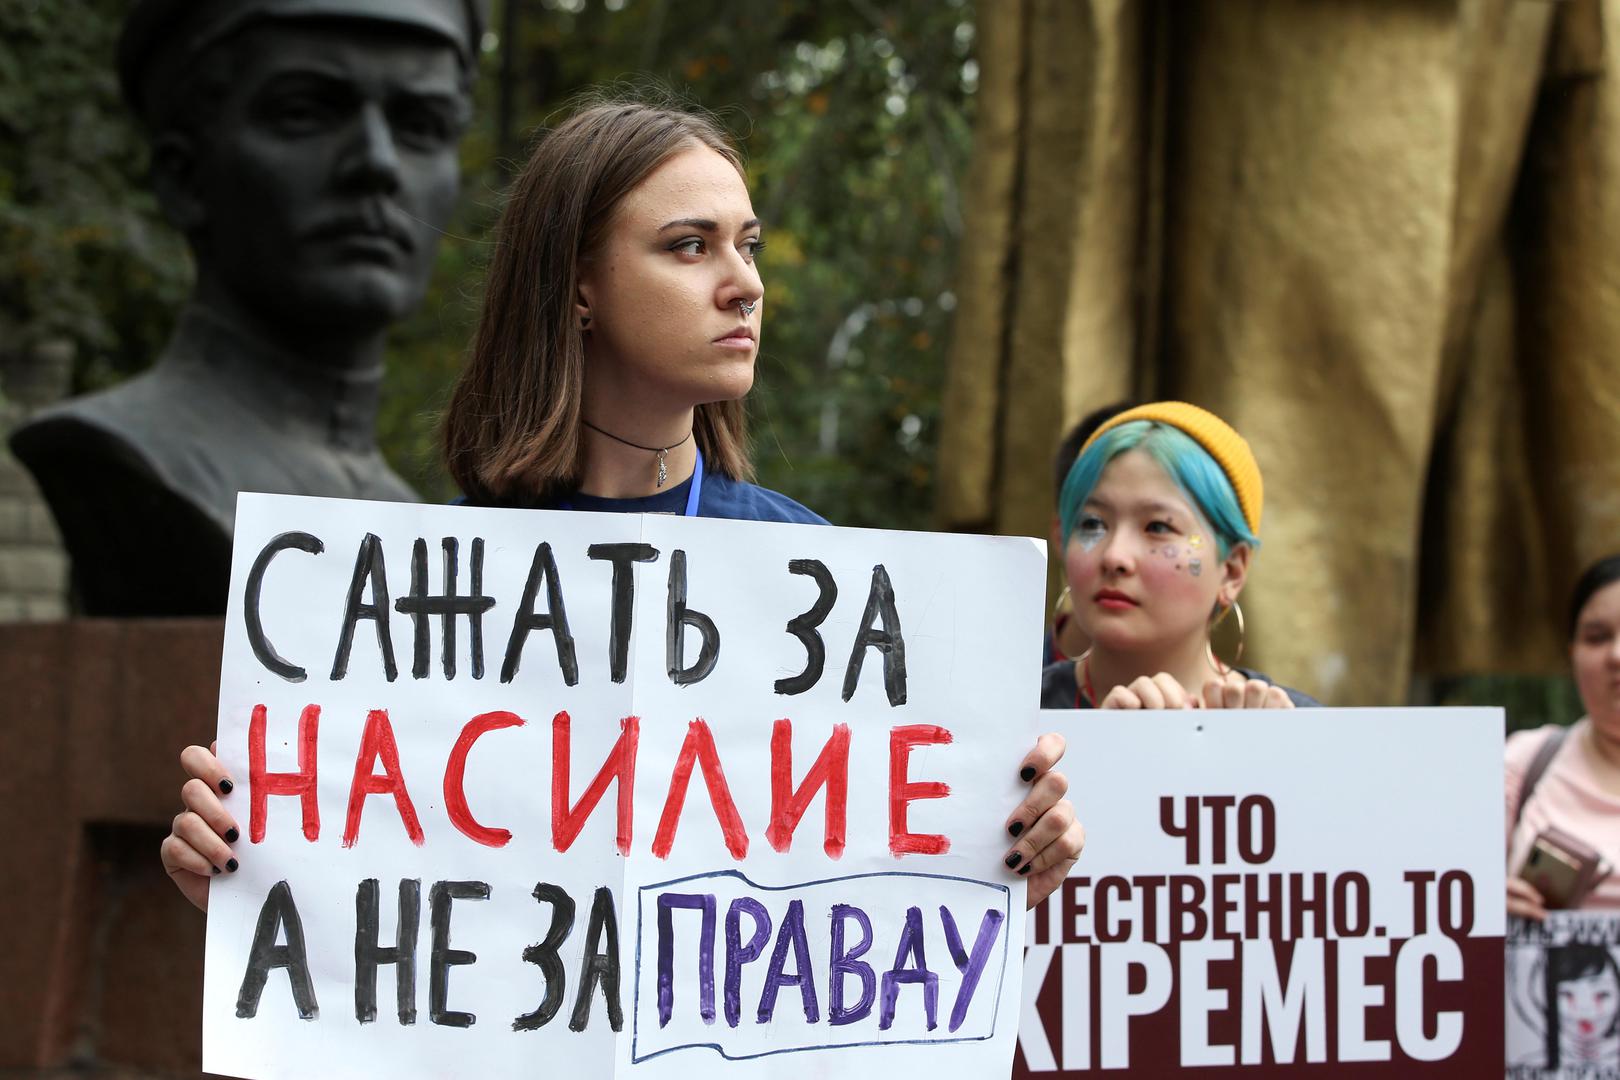 Deux femmes tiennent des pancartes lors d’une manifestation contre la discrimination et la violence à l’encontre de femmes à Almaty, au Kazakhstan, le 28 septembre 2019. Sur la pancarte de gauche figure ce message : "La prison doit punir la violence, pas 